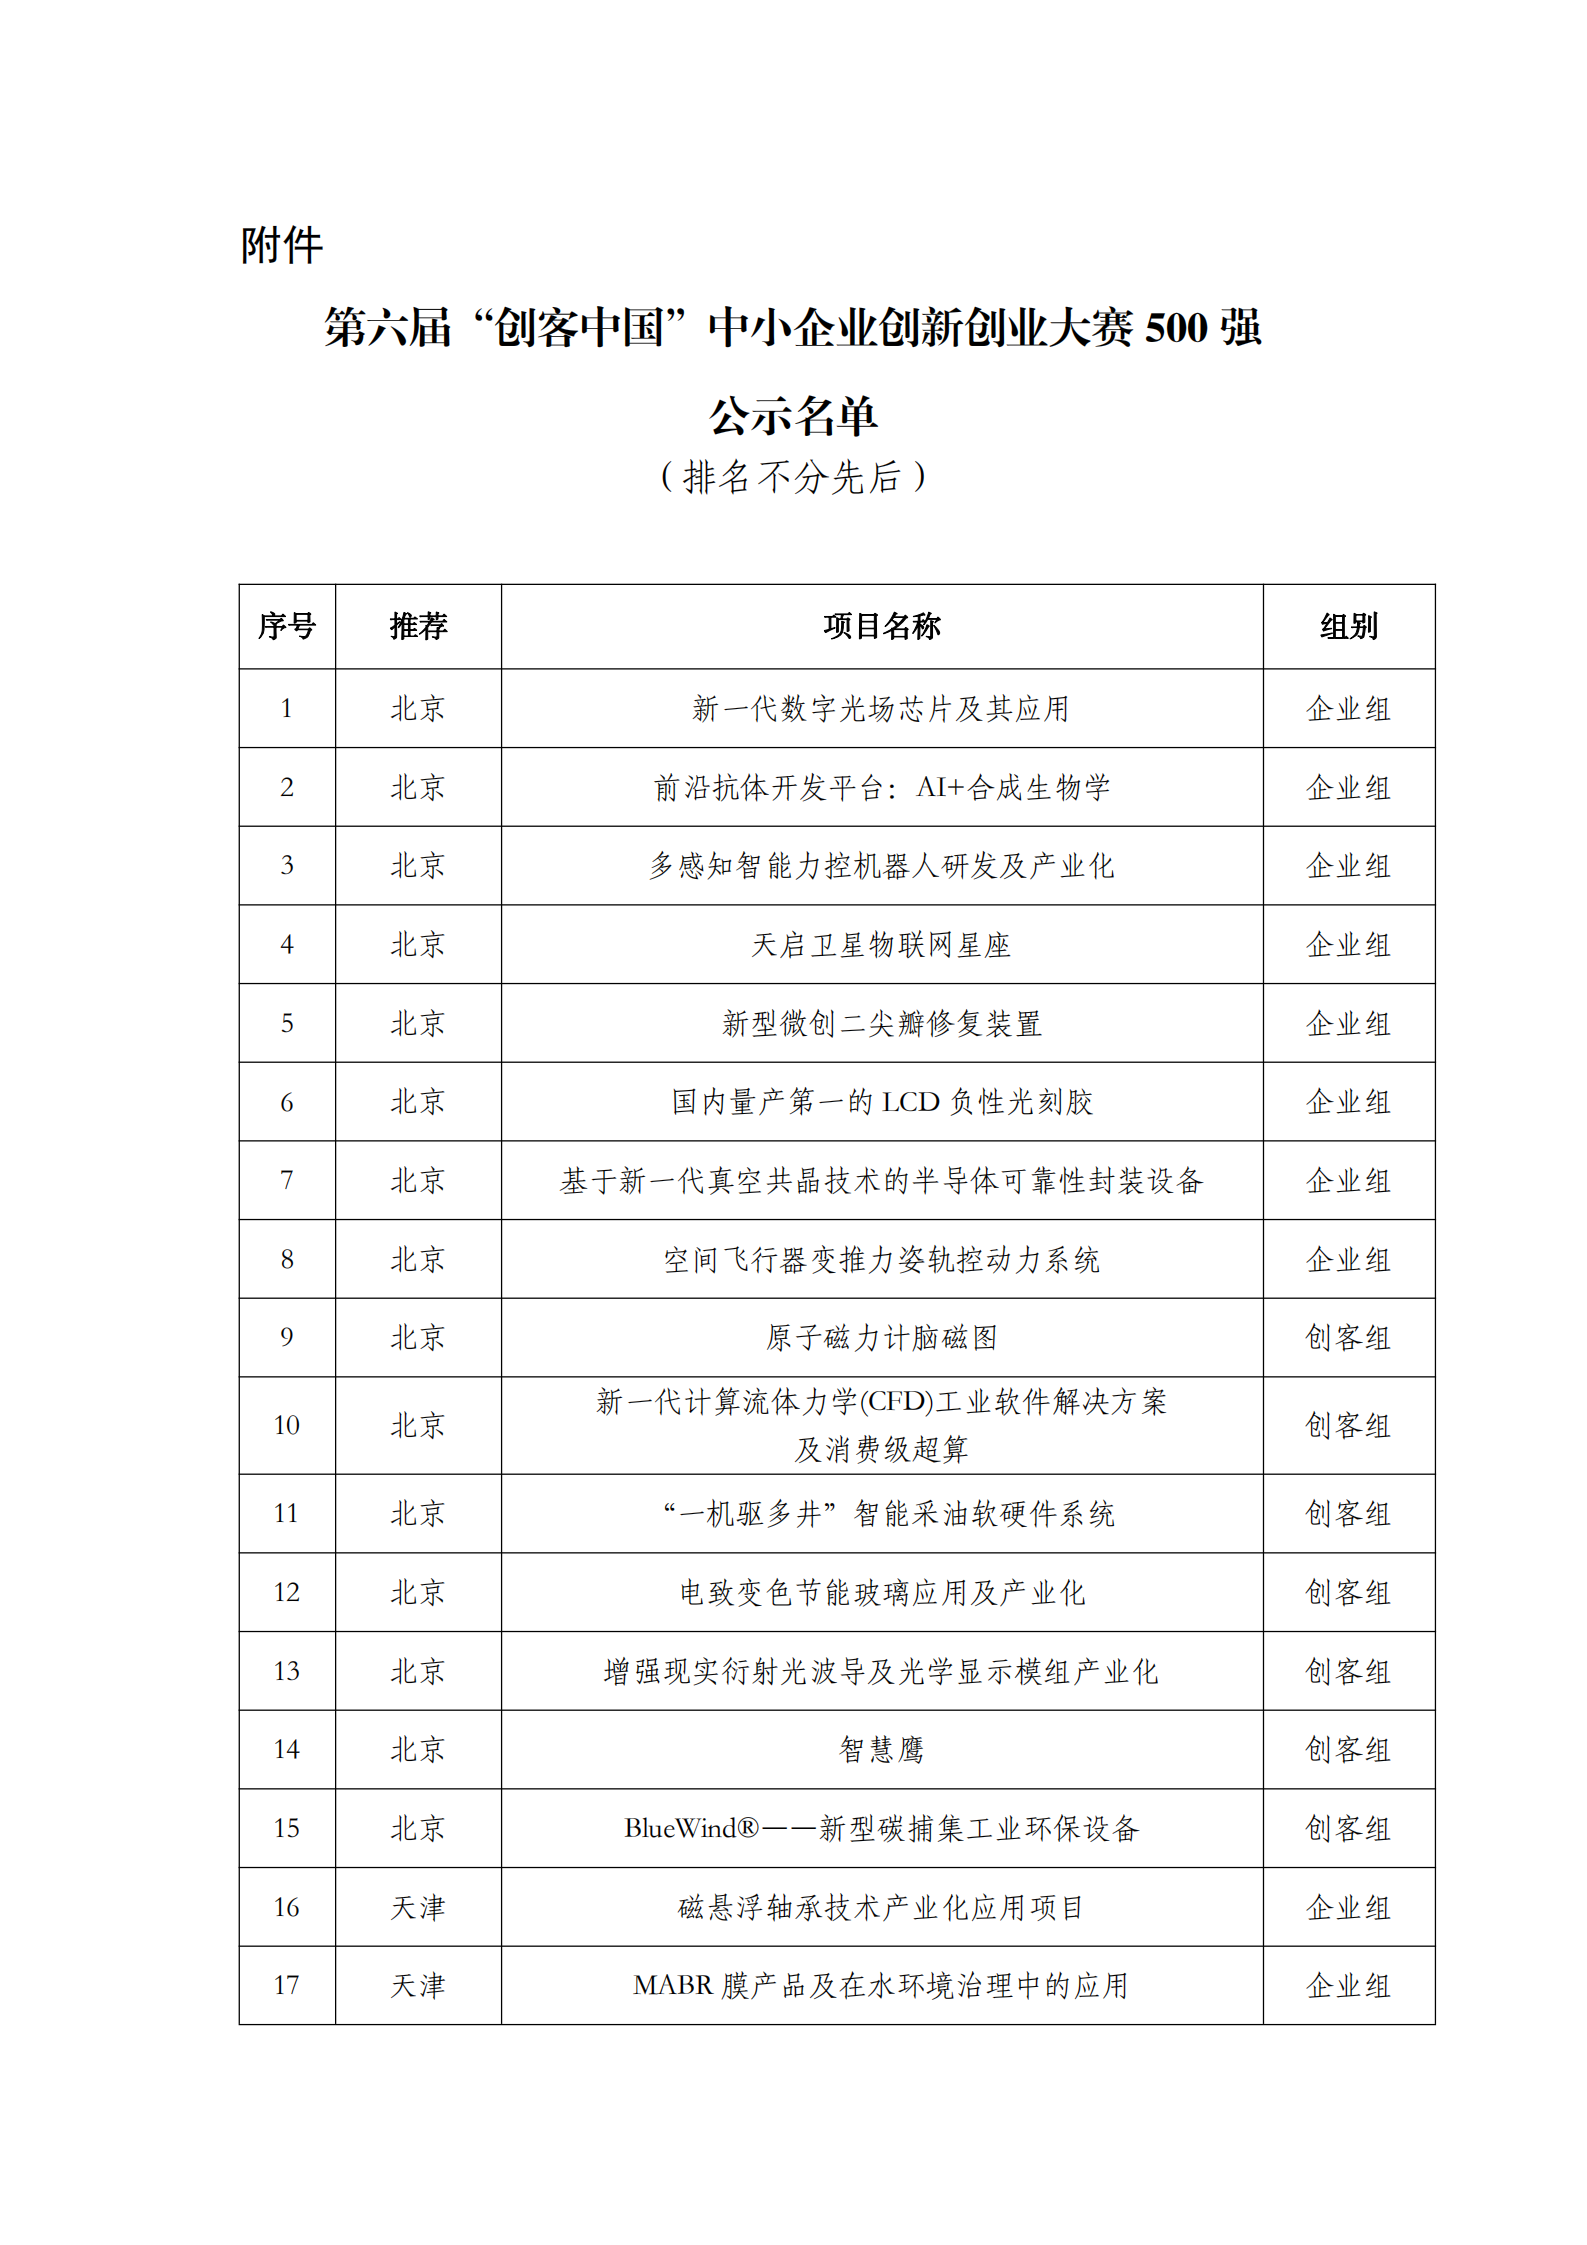 第六届“创客中国”中小企业创新创业大赛500强公示名单_00.png